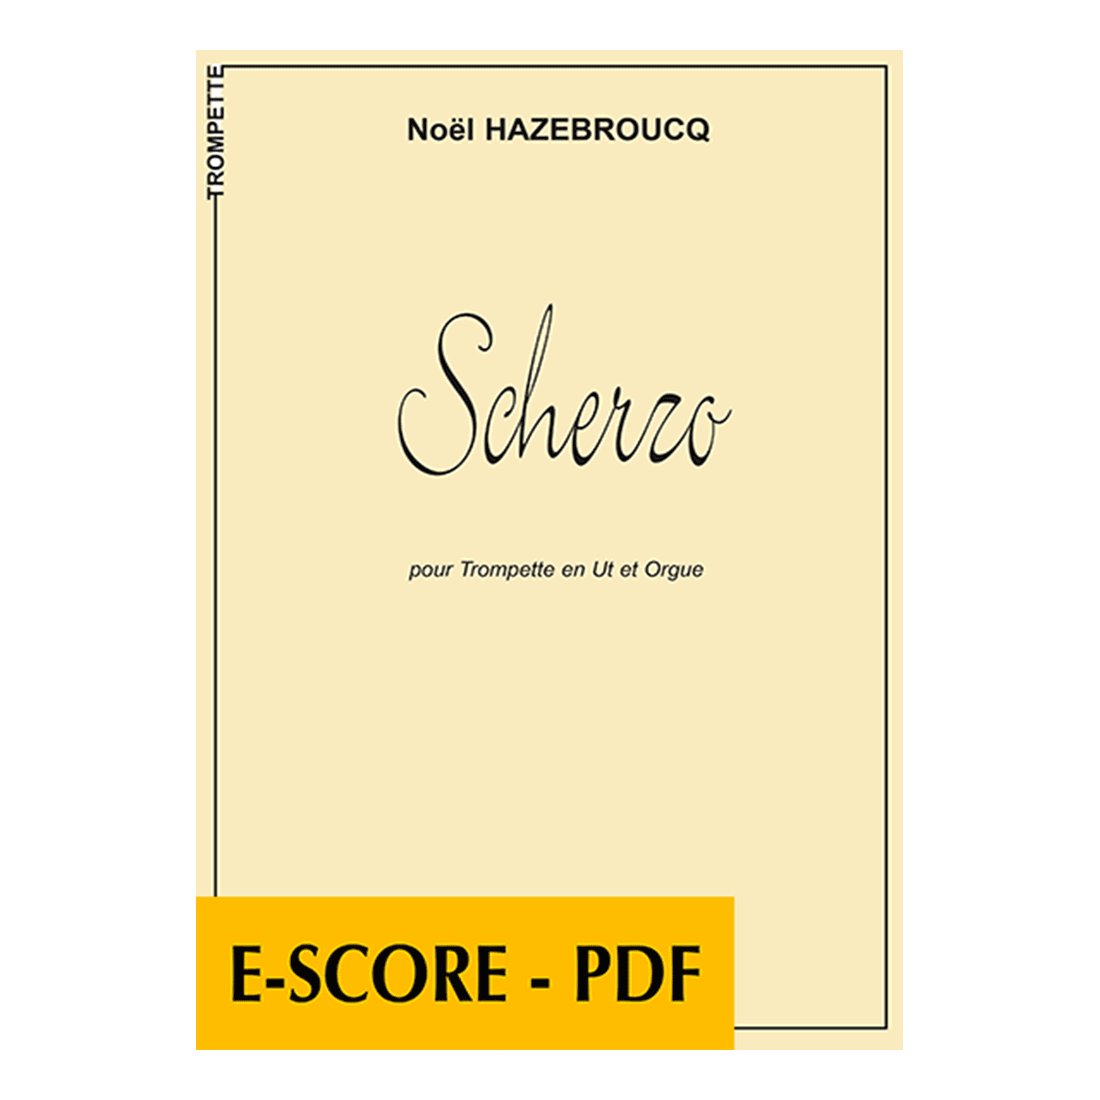 Scherzo for trumpet and organ - E-score PDF